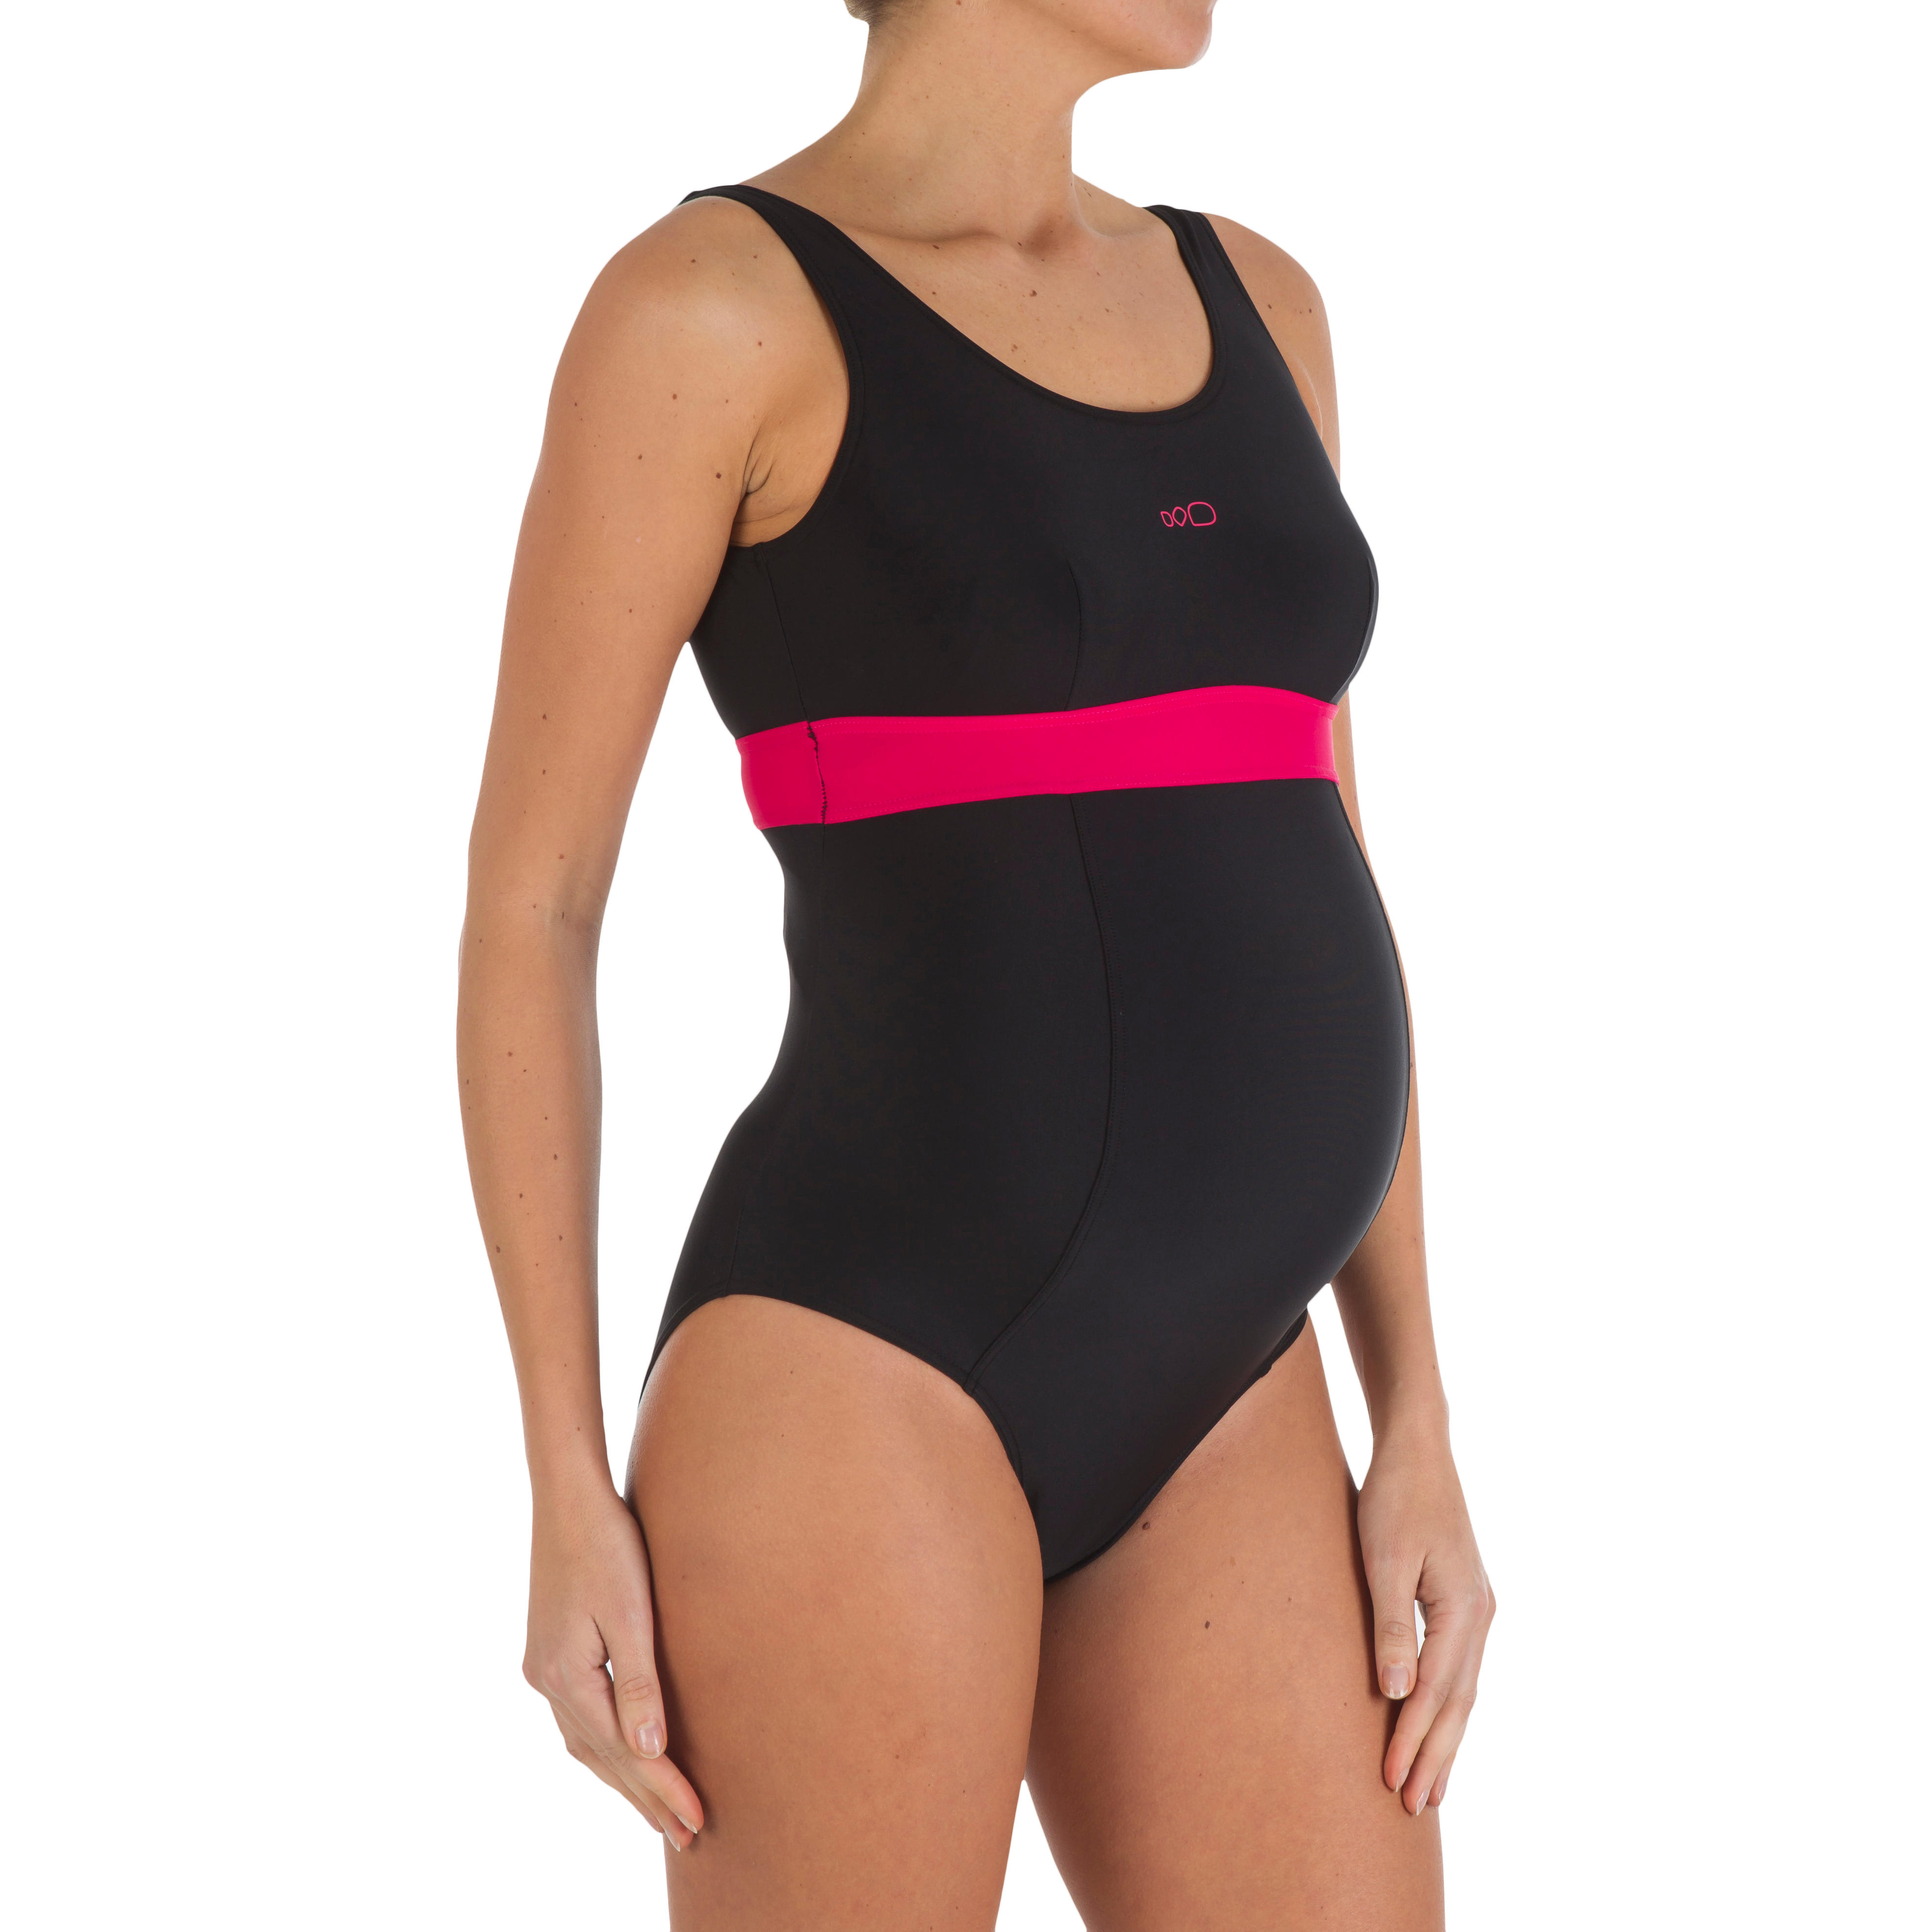 decathlon swim suit for ladies